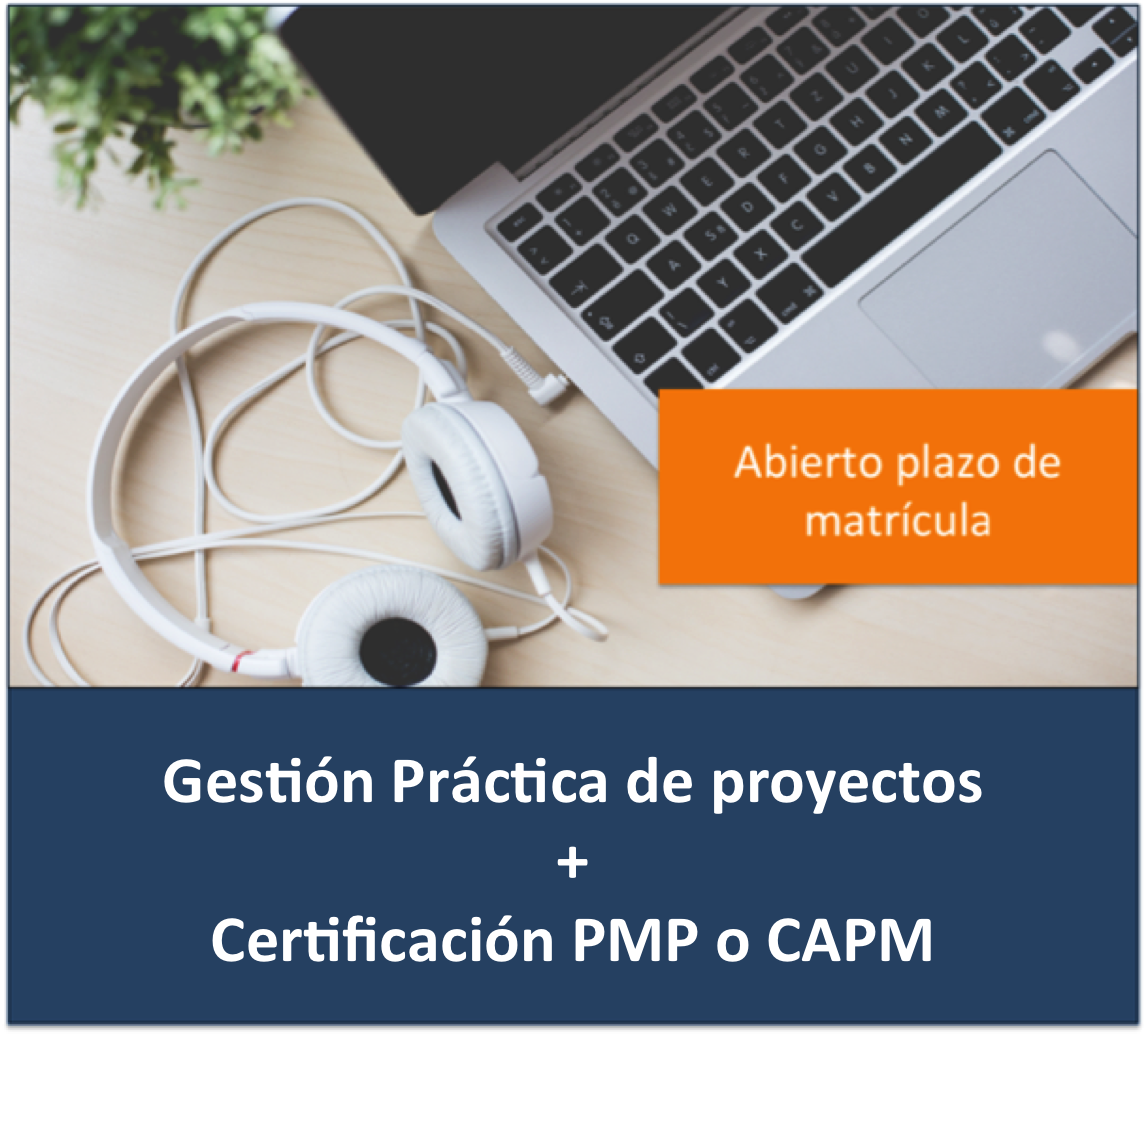 Curso Gestion practica de proyectos + Certificacion PMP